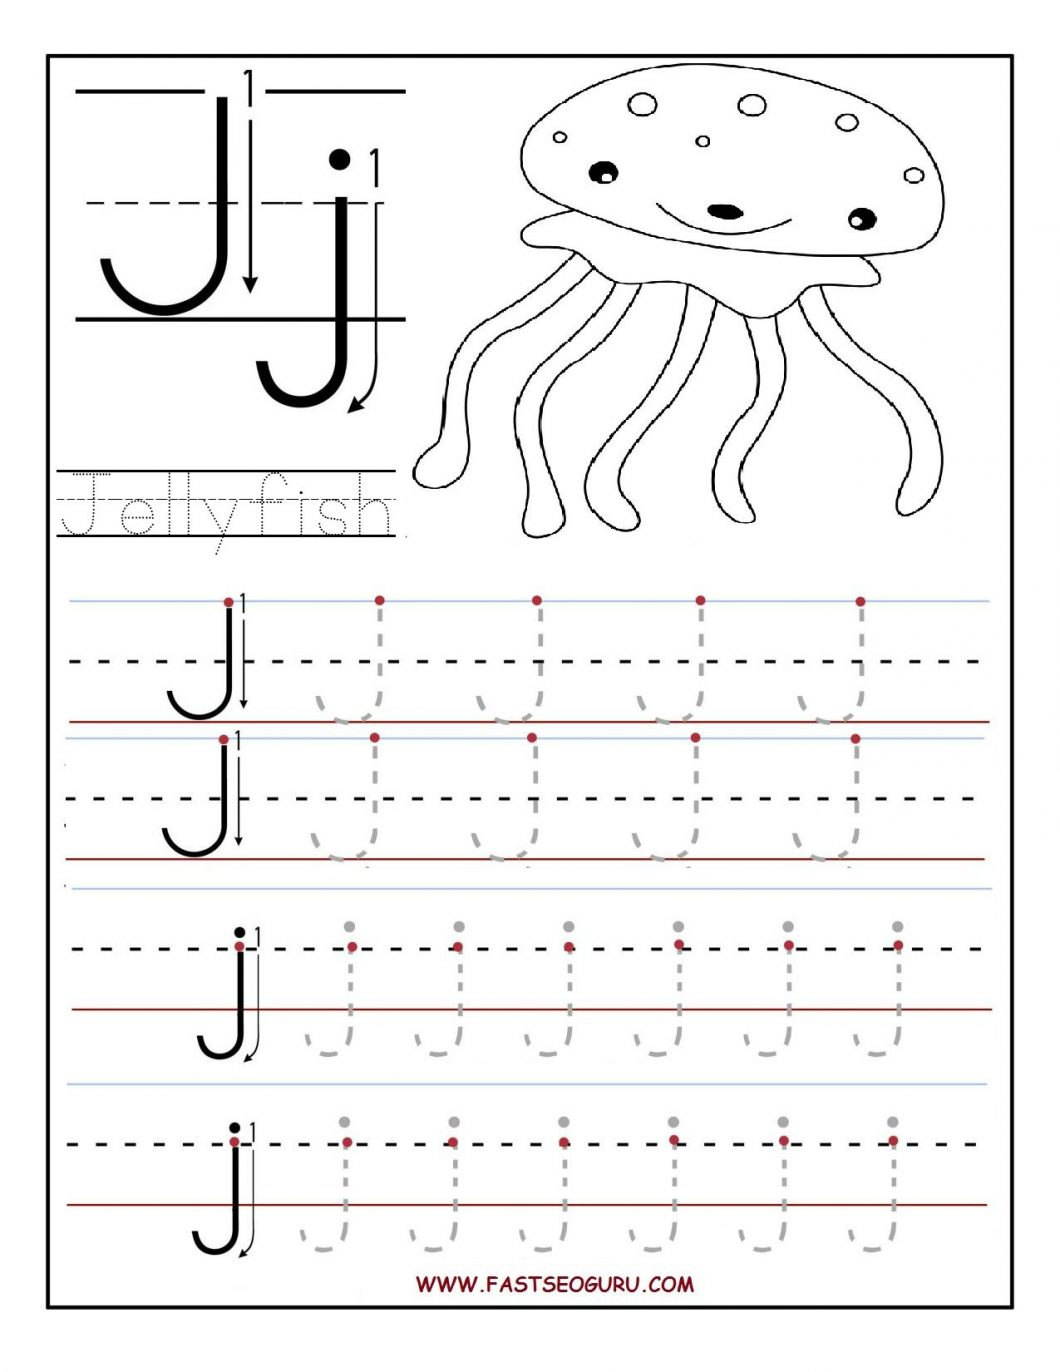 Free Printable Activities For Preschoolers – With Printables - Free Printable Activities For Preschoolers